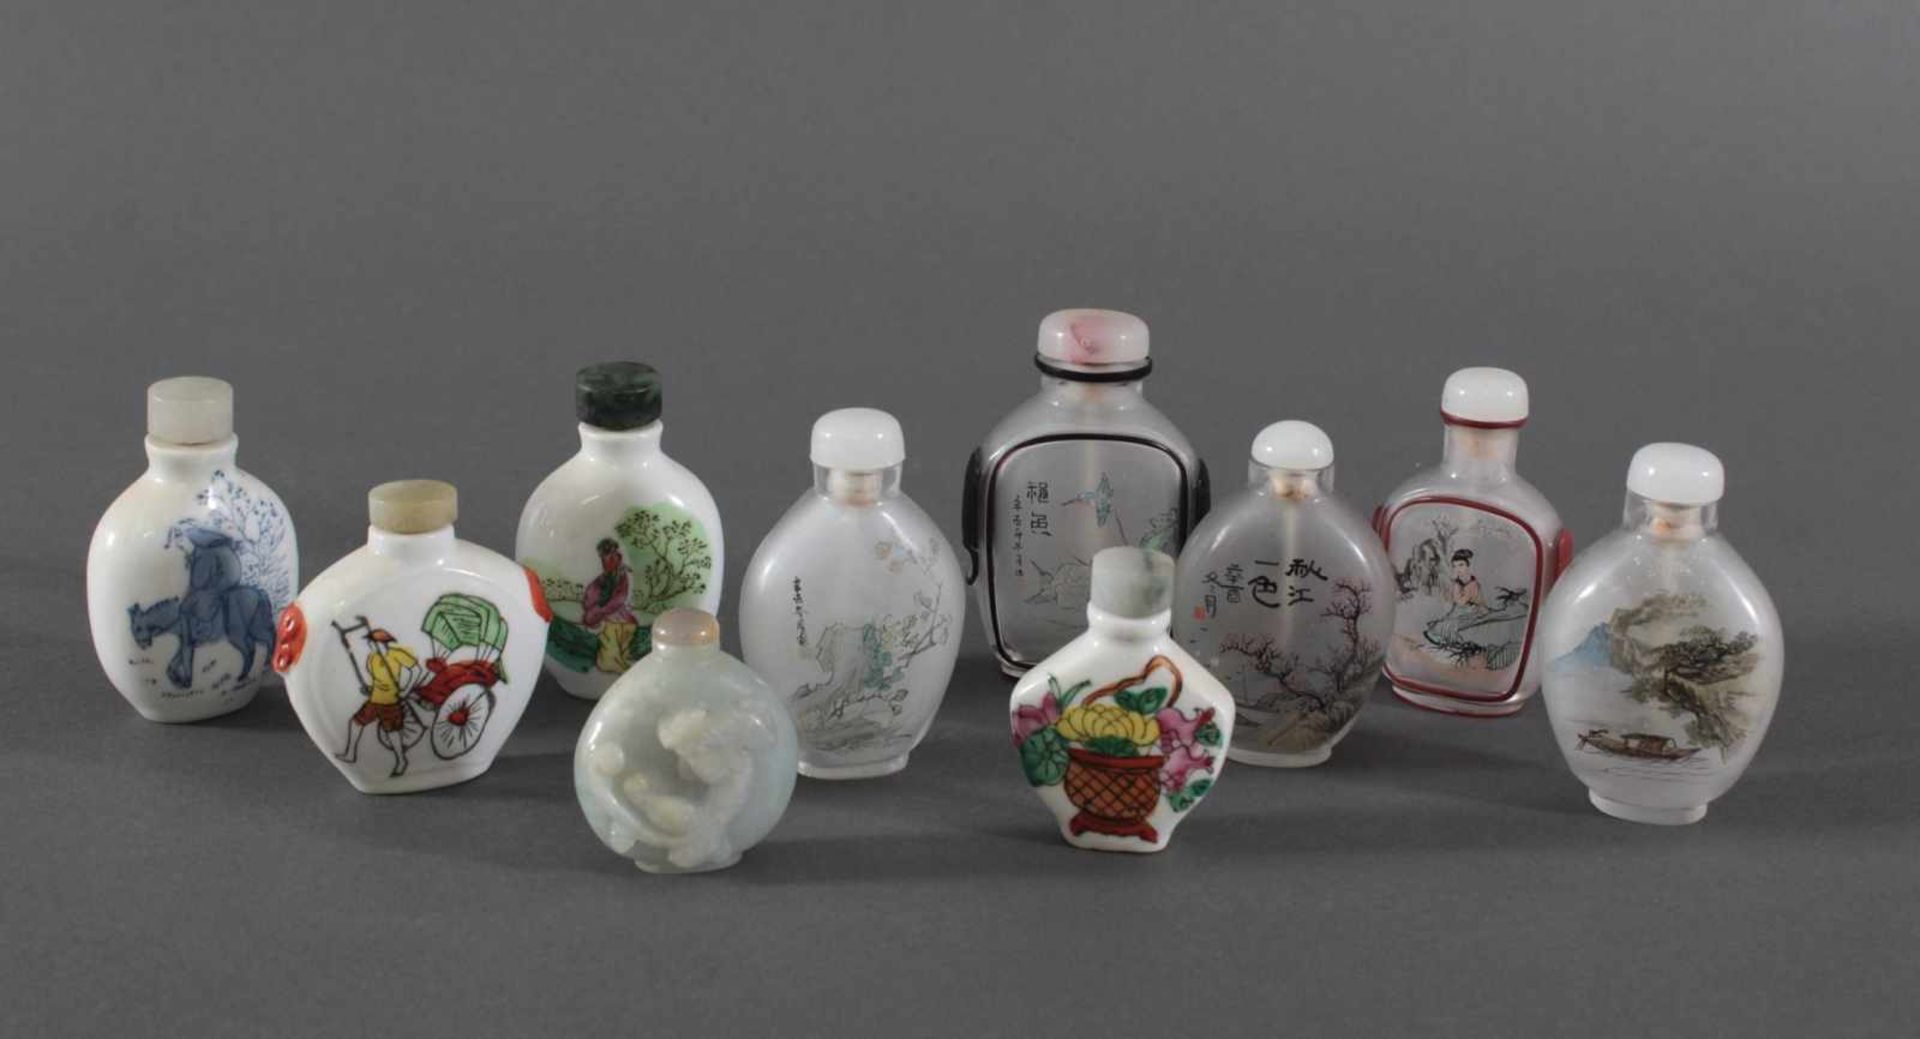 Sammlung Snuff bottles aus Glas, Jade und Porzellan, 10 StückJade Snuff bottle, verziert auf der